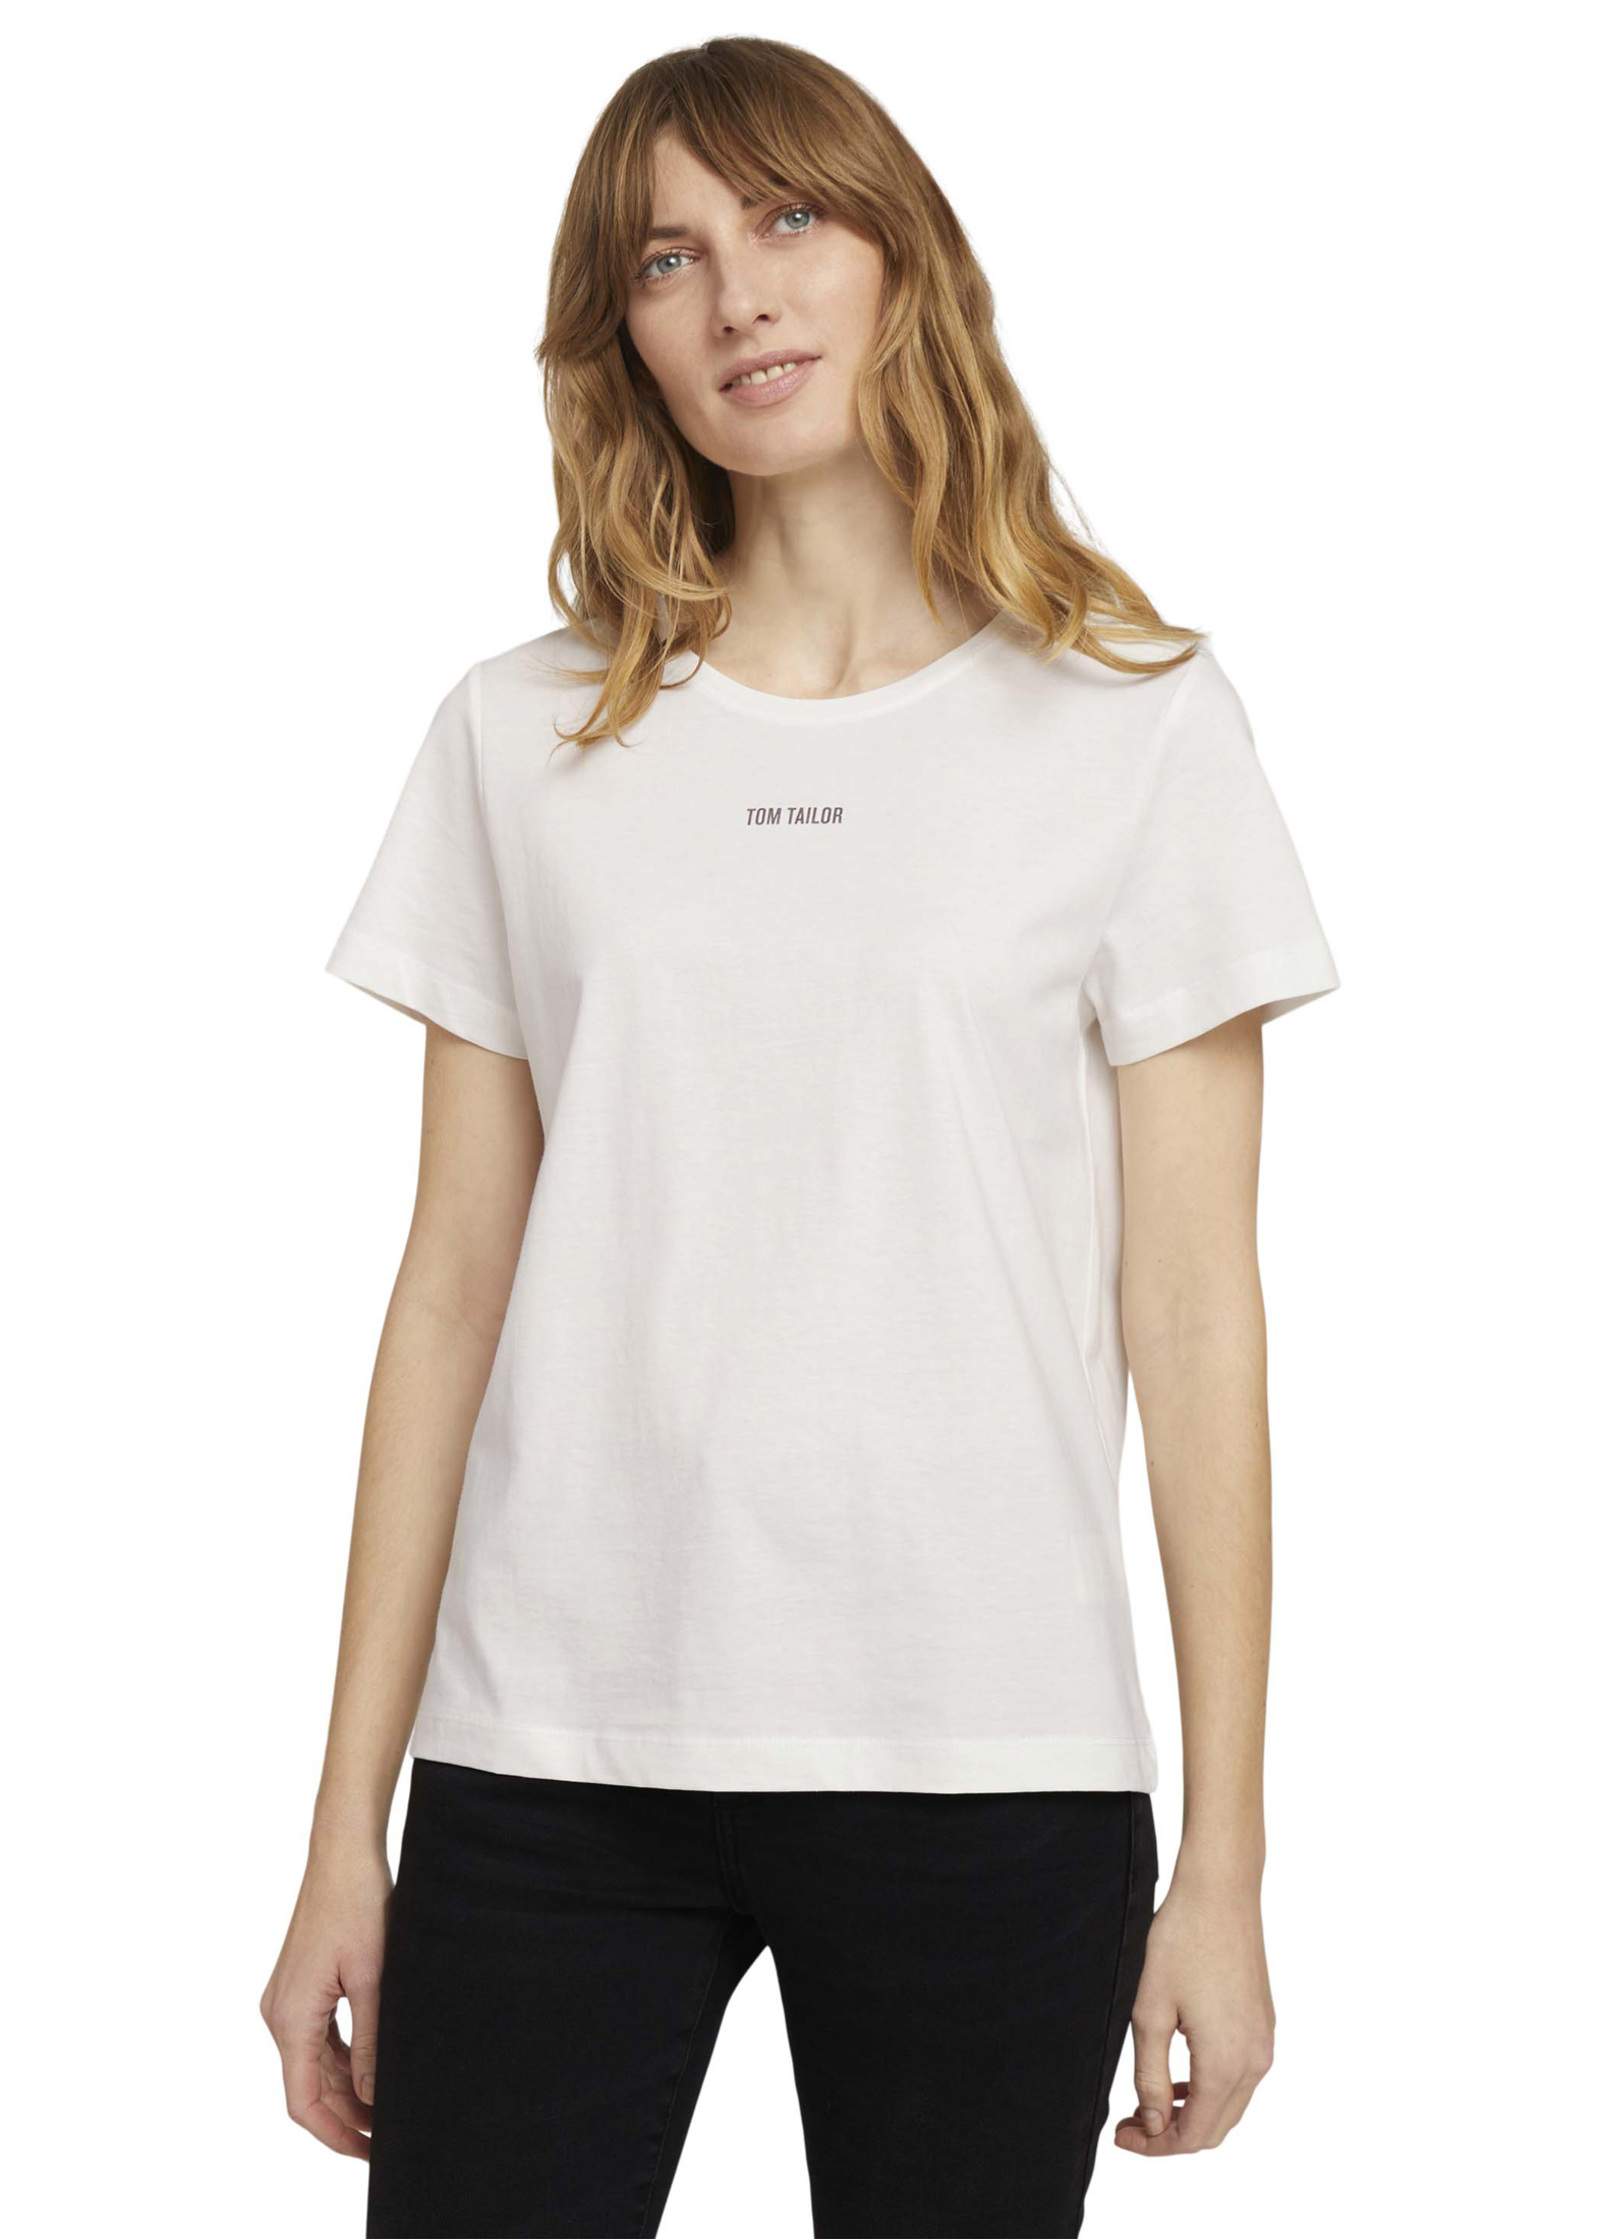 Tom Tailor® Tshirt C-neck Logo - Whisper White Size 3XL